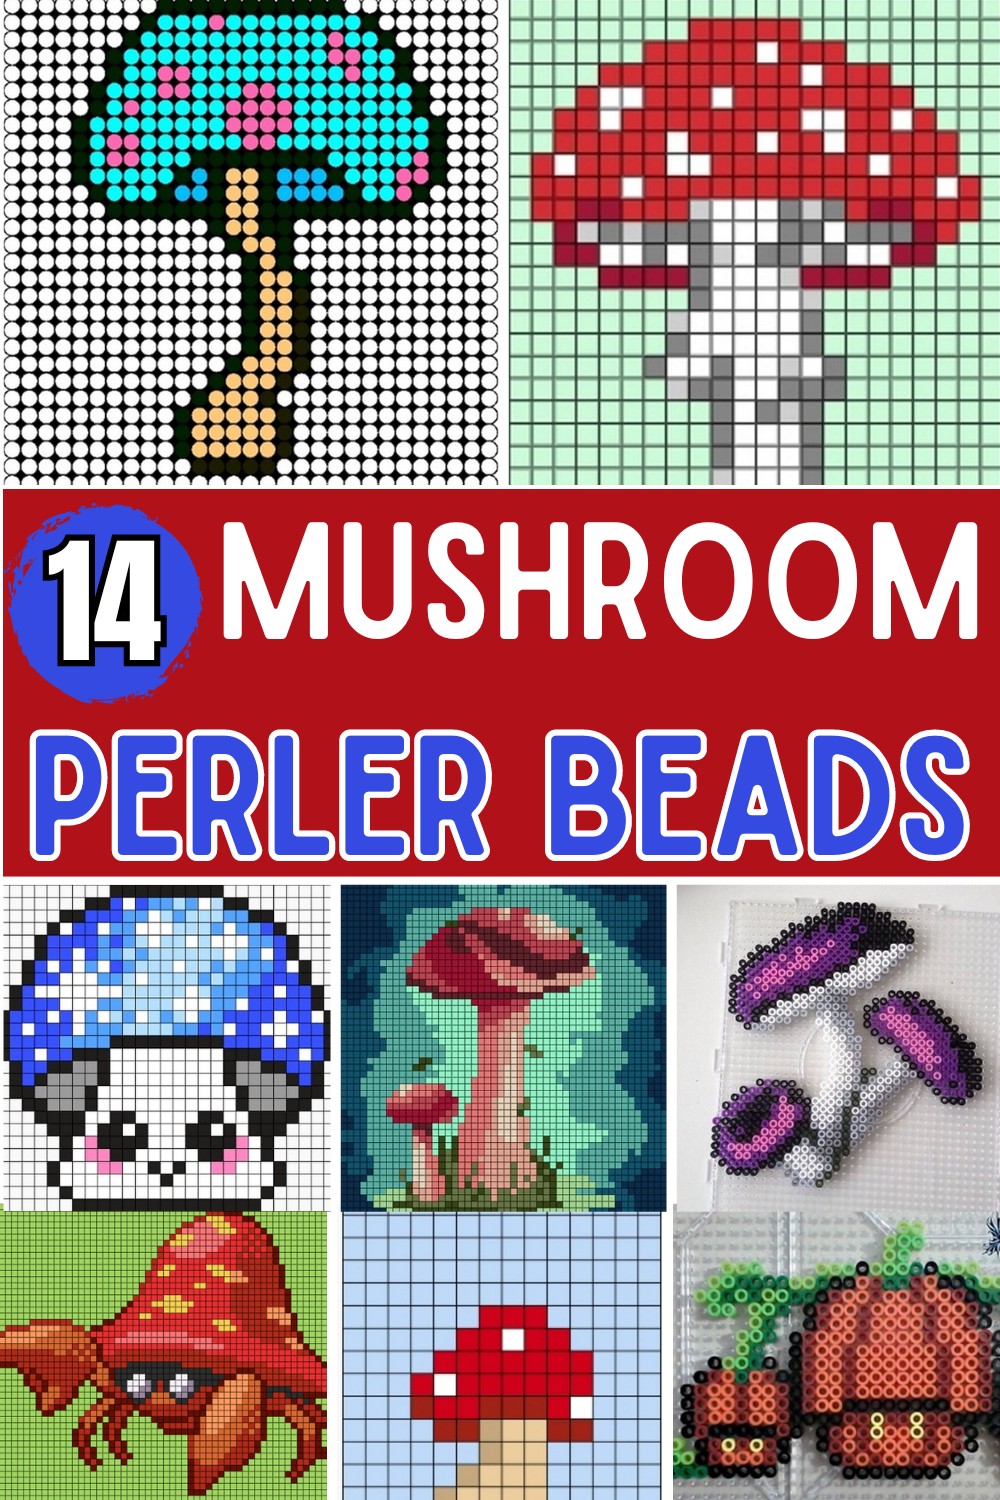 Mushroom Perler Bead Patterns